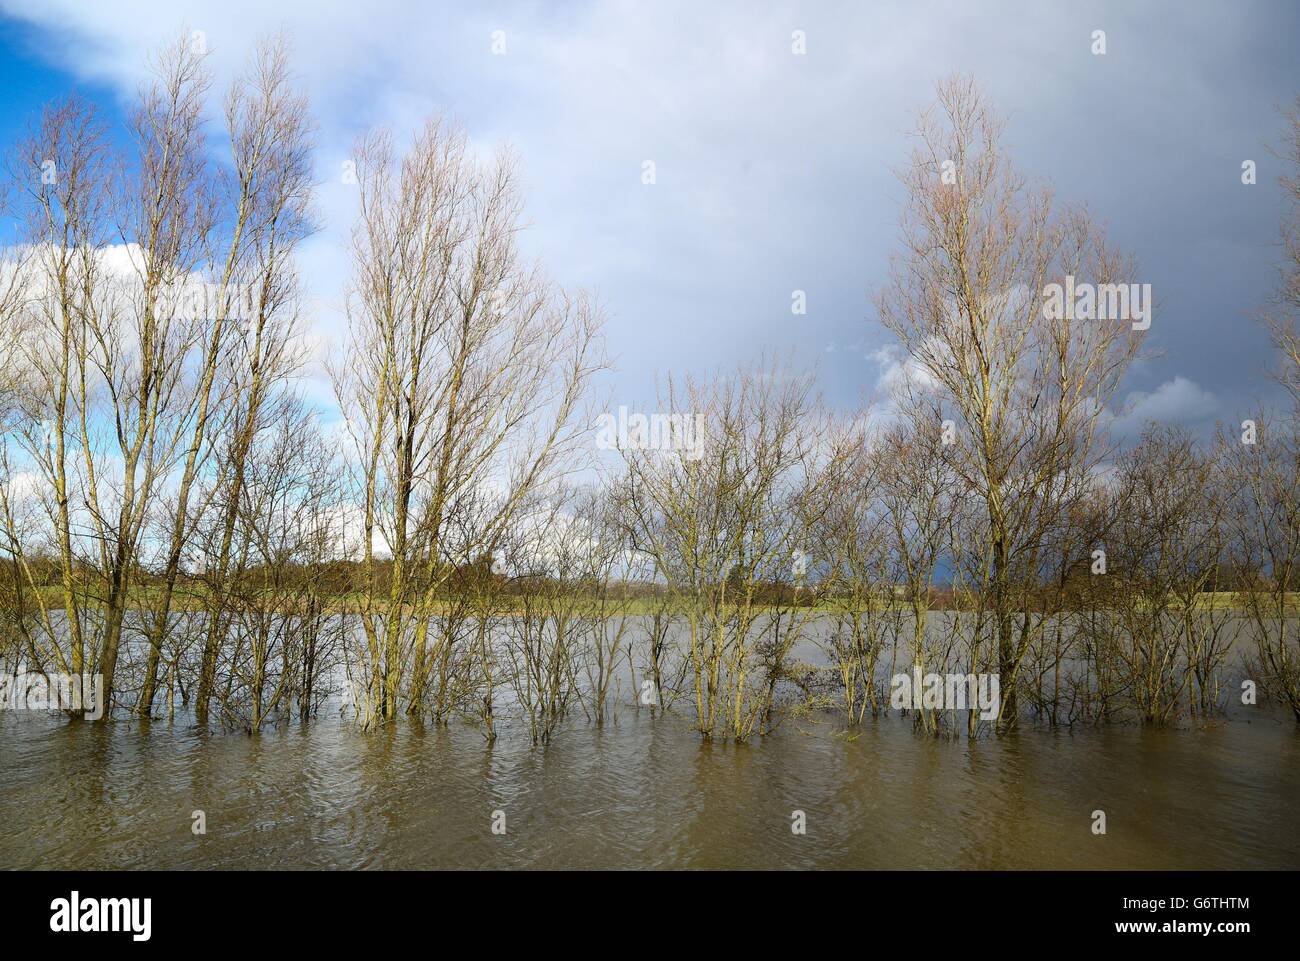 Eine allgemeine Ansicht eines Hochwasserspeichers in Hothfield in der Nähe von Ashford, Kent, da der Flussspiegel in diesem Gebiet weiter ansteigt. Stockfoto